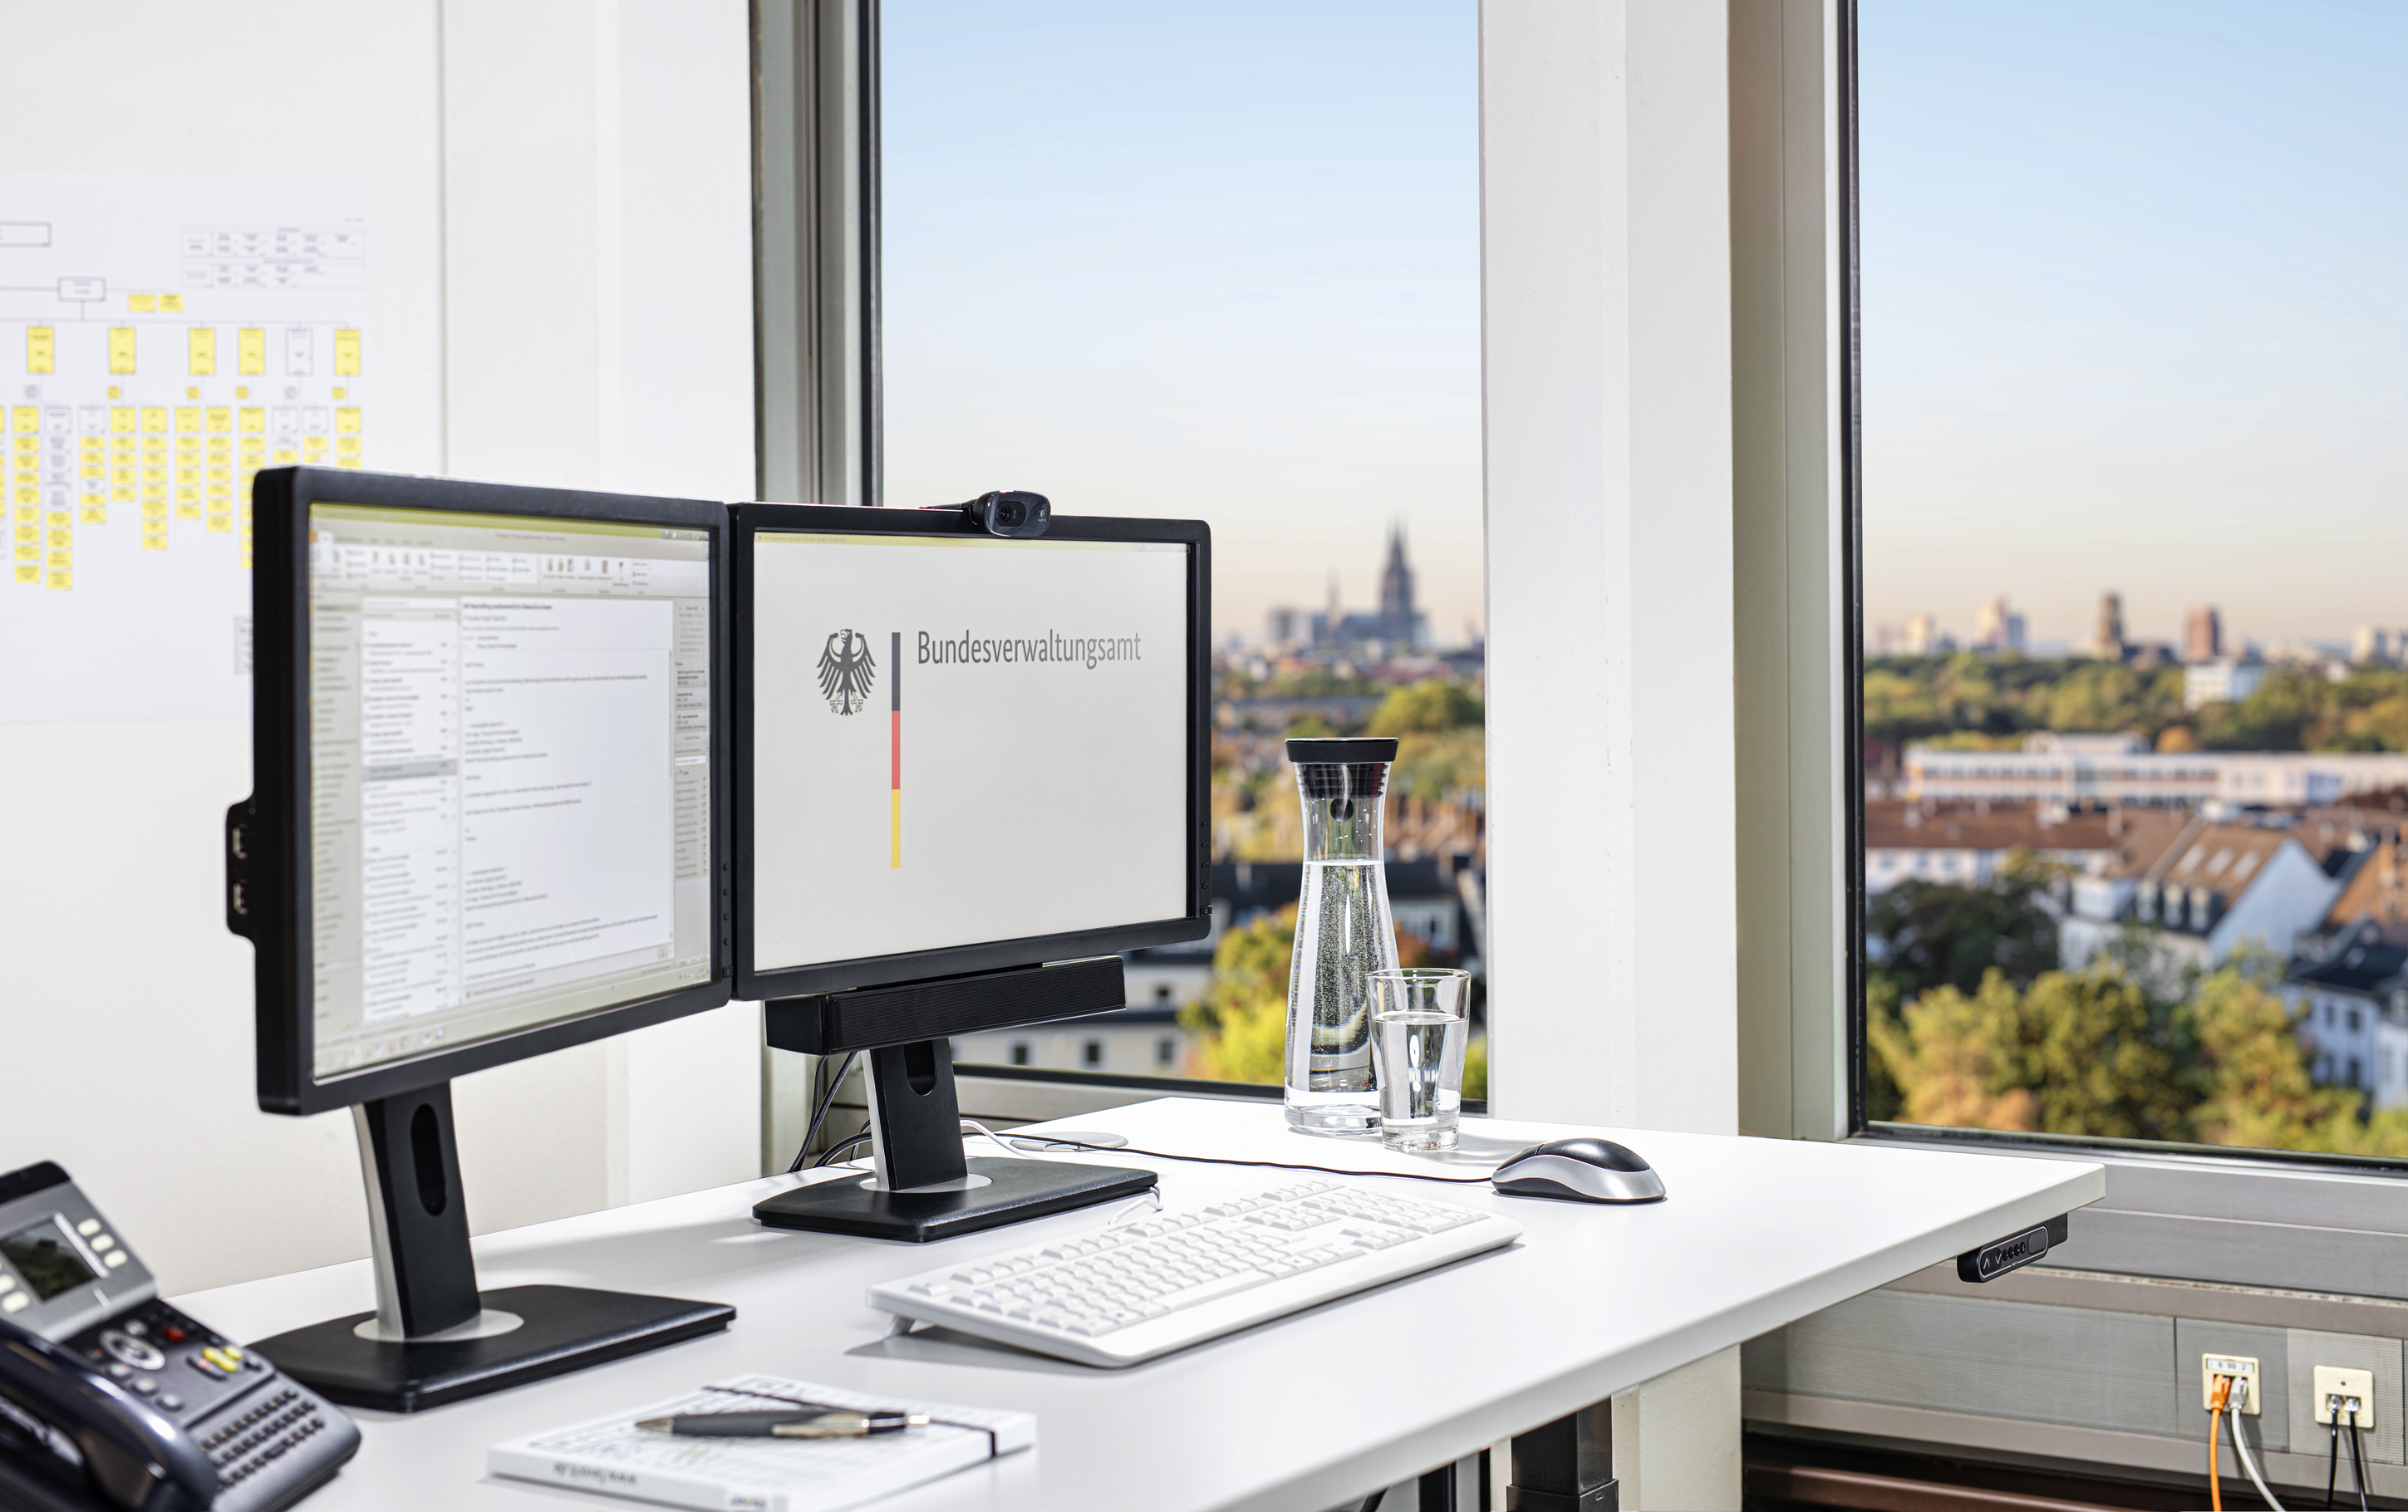 Schreibtisch mit zwei Bildschirmen, einer Tastatur und Computer-Maus, einem Telefon sowie ein Notizblock mit Stift. Vom Schreibtisch aus blickt man aus dem Fenster mit dem Kölner Dom im leicht verschwommenen Hintergrund.